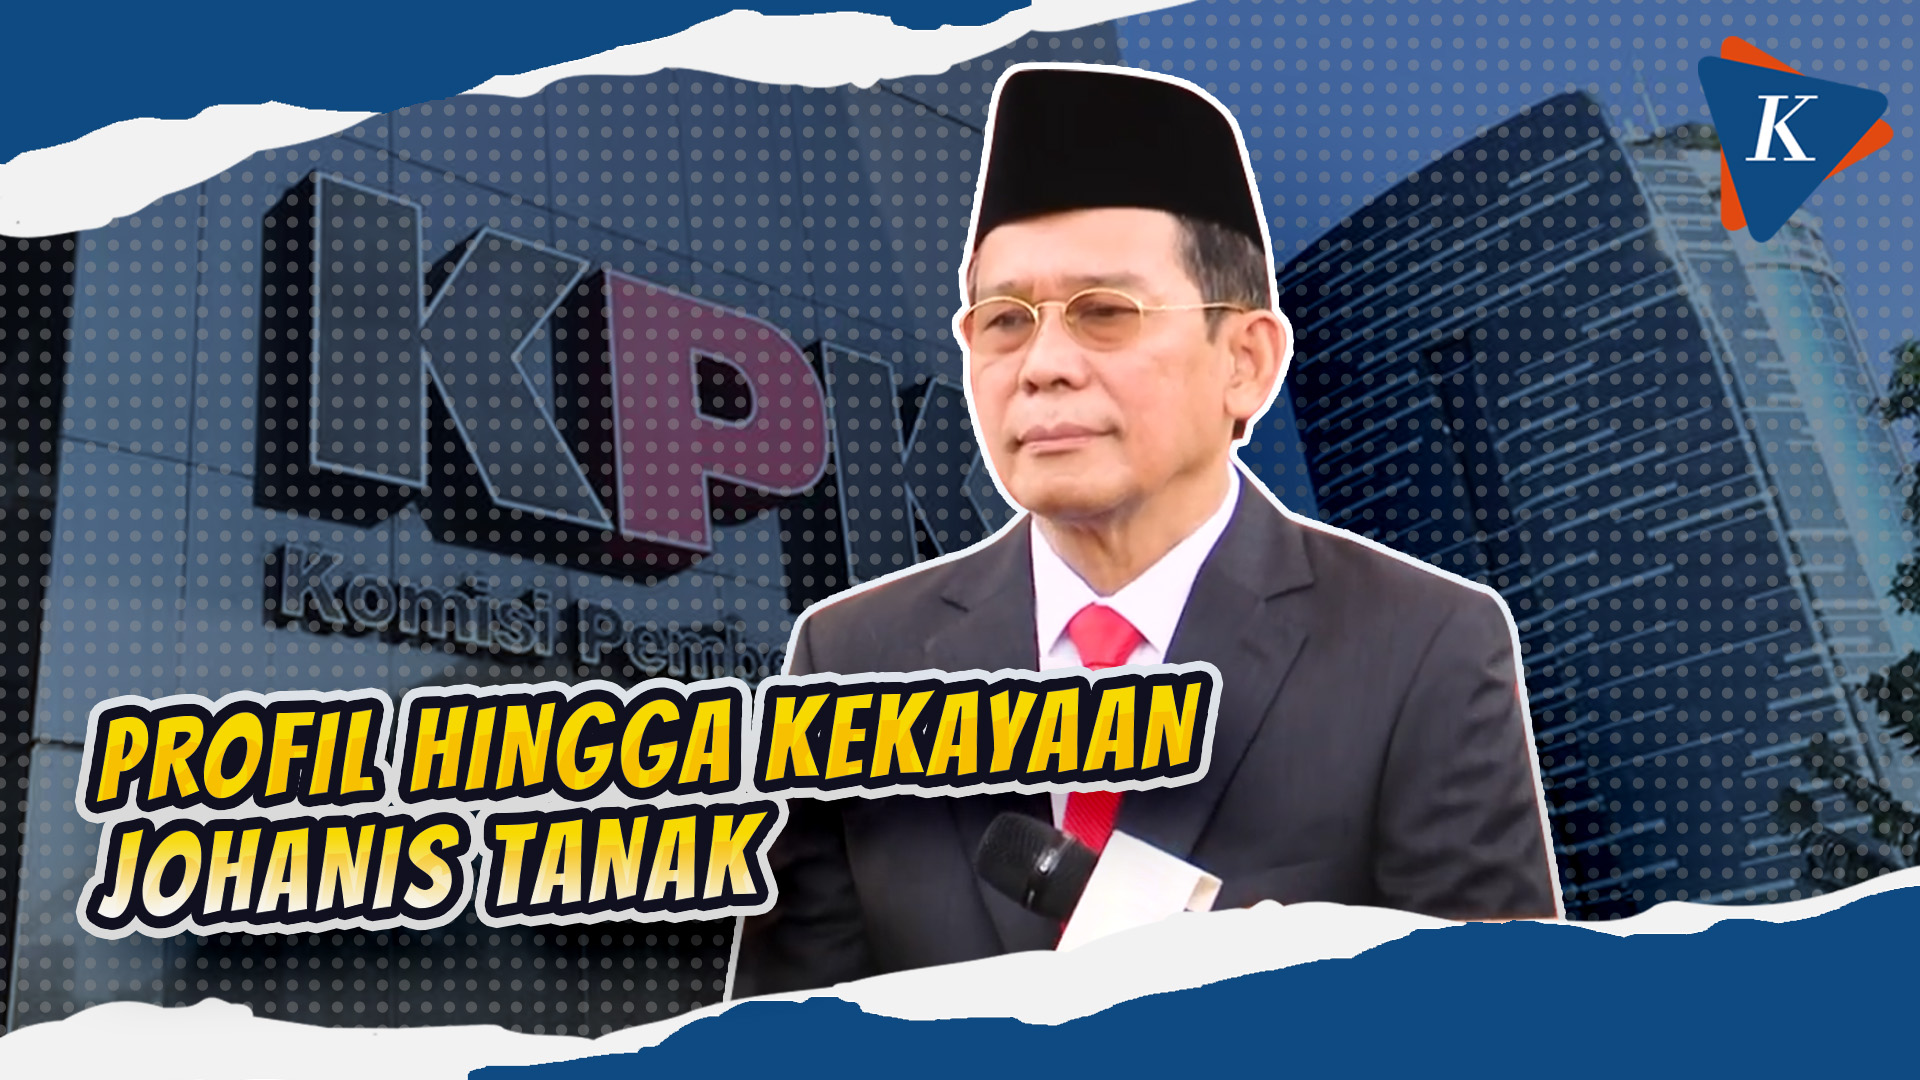 Johanis Tanak, Wakil Ketua KPK Baru yang Usulkan Restorative Justice untuk Koruptor